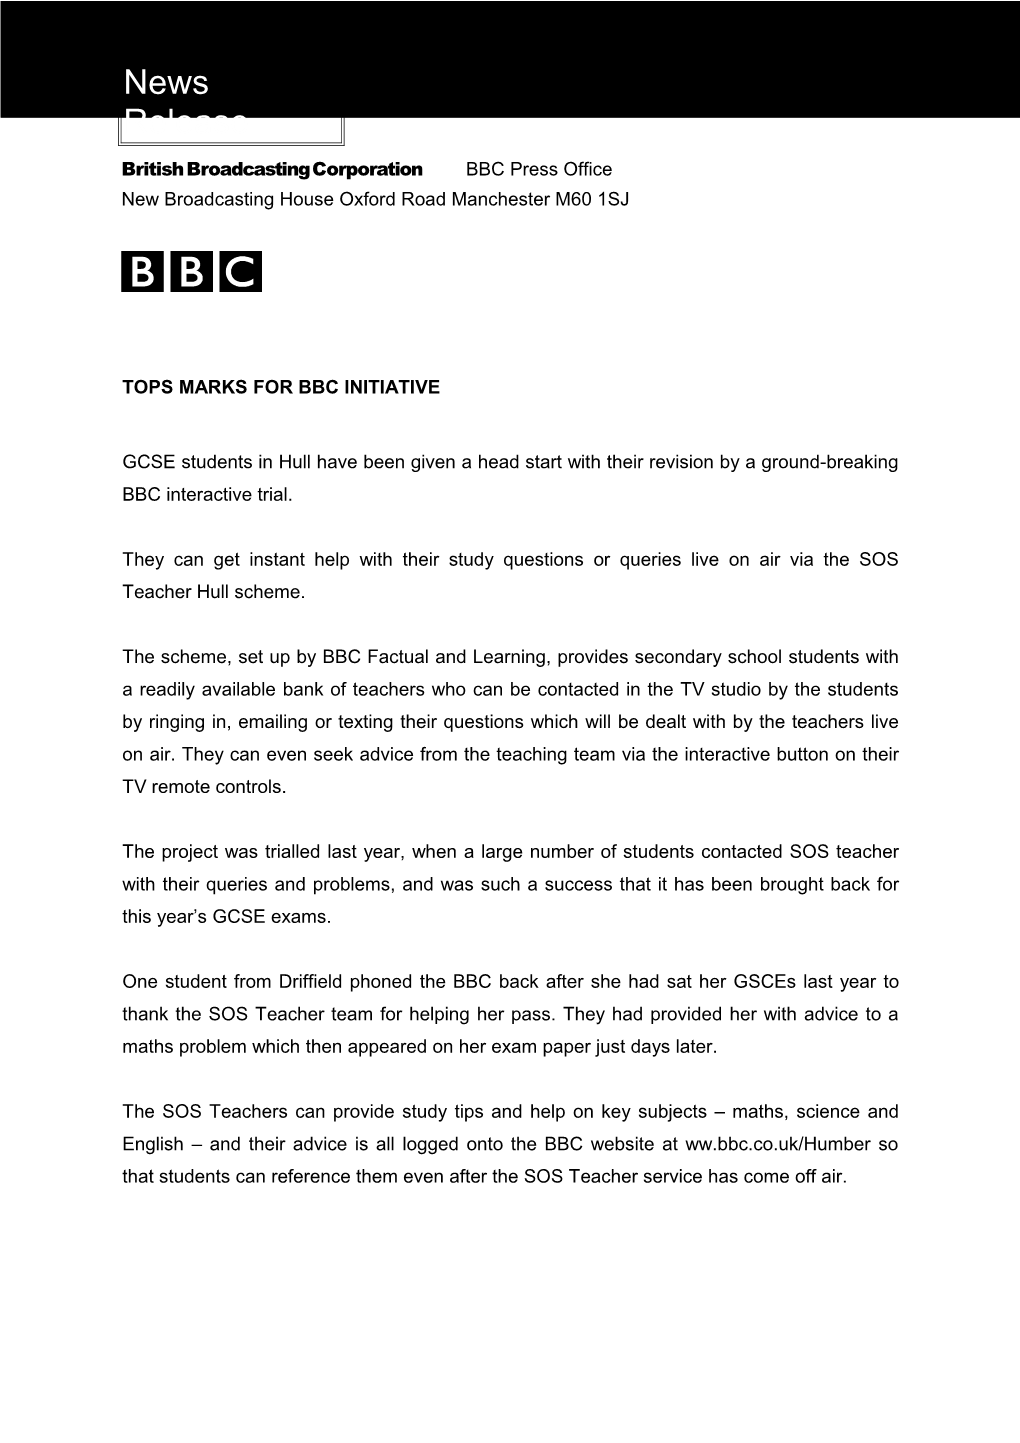 BBC Press & Publicity